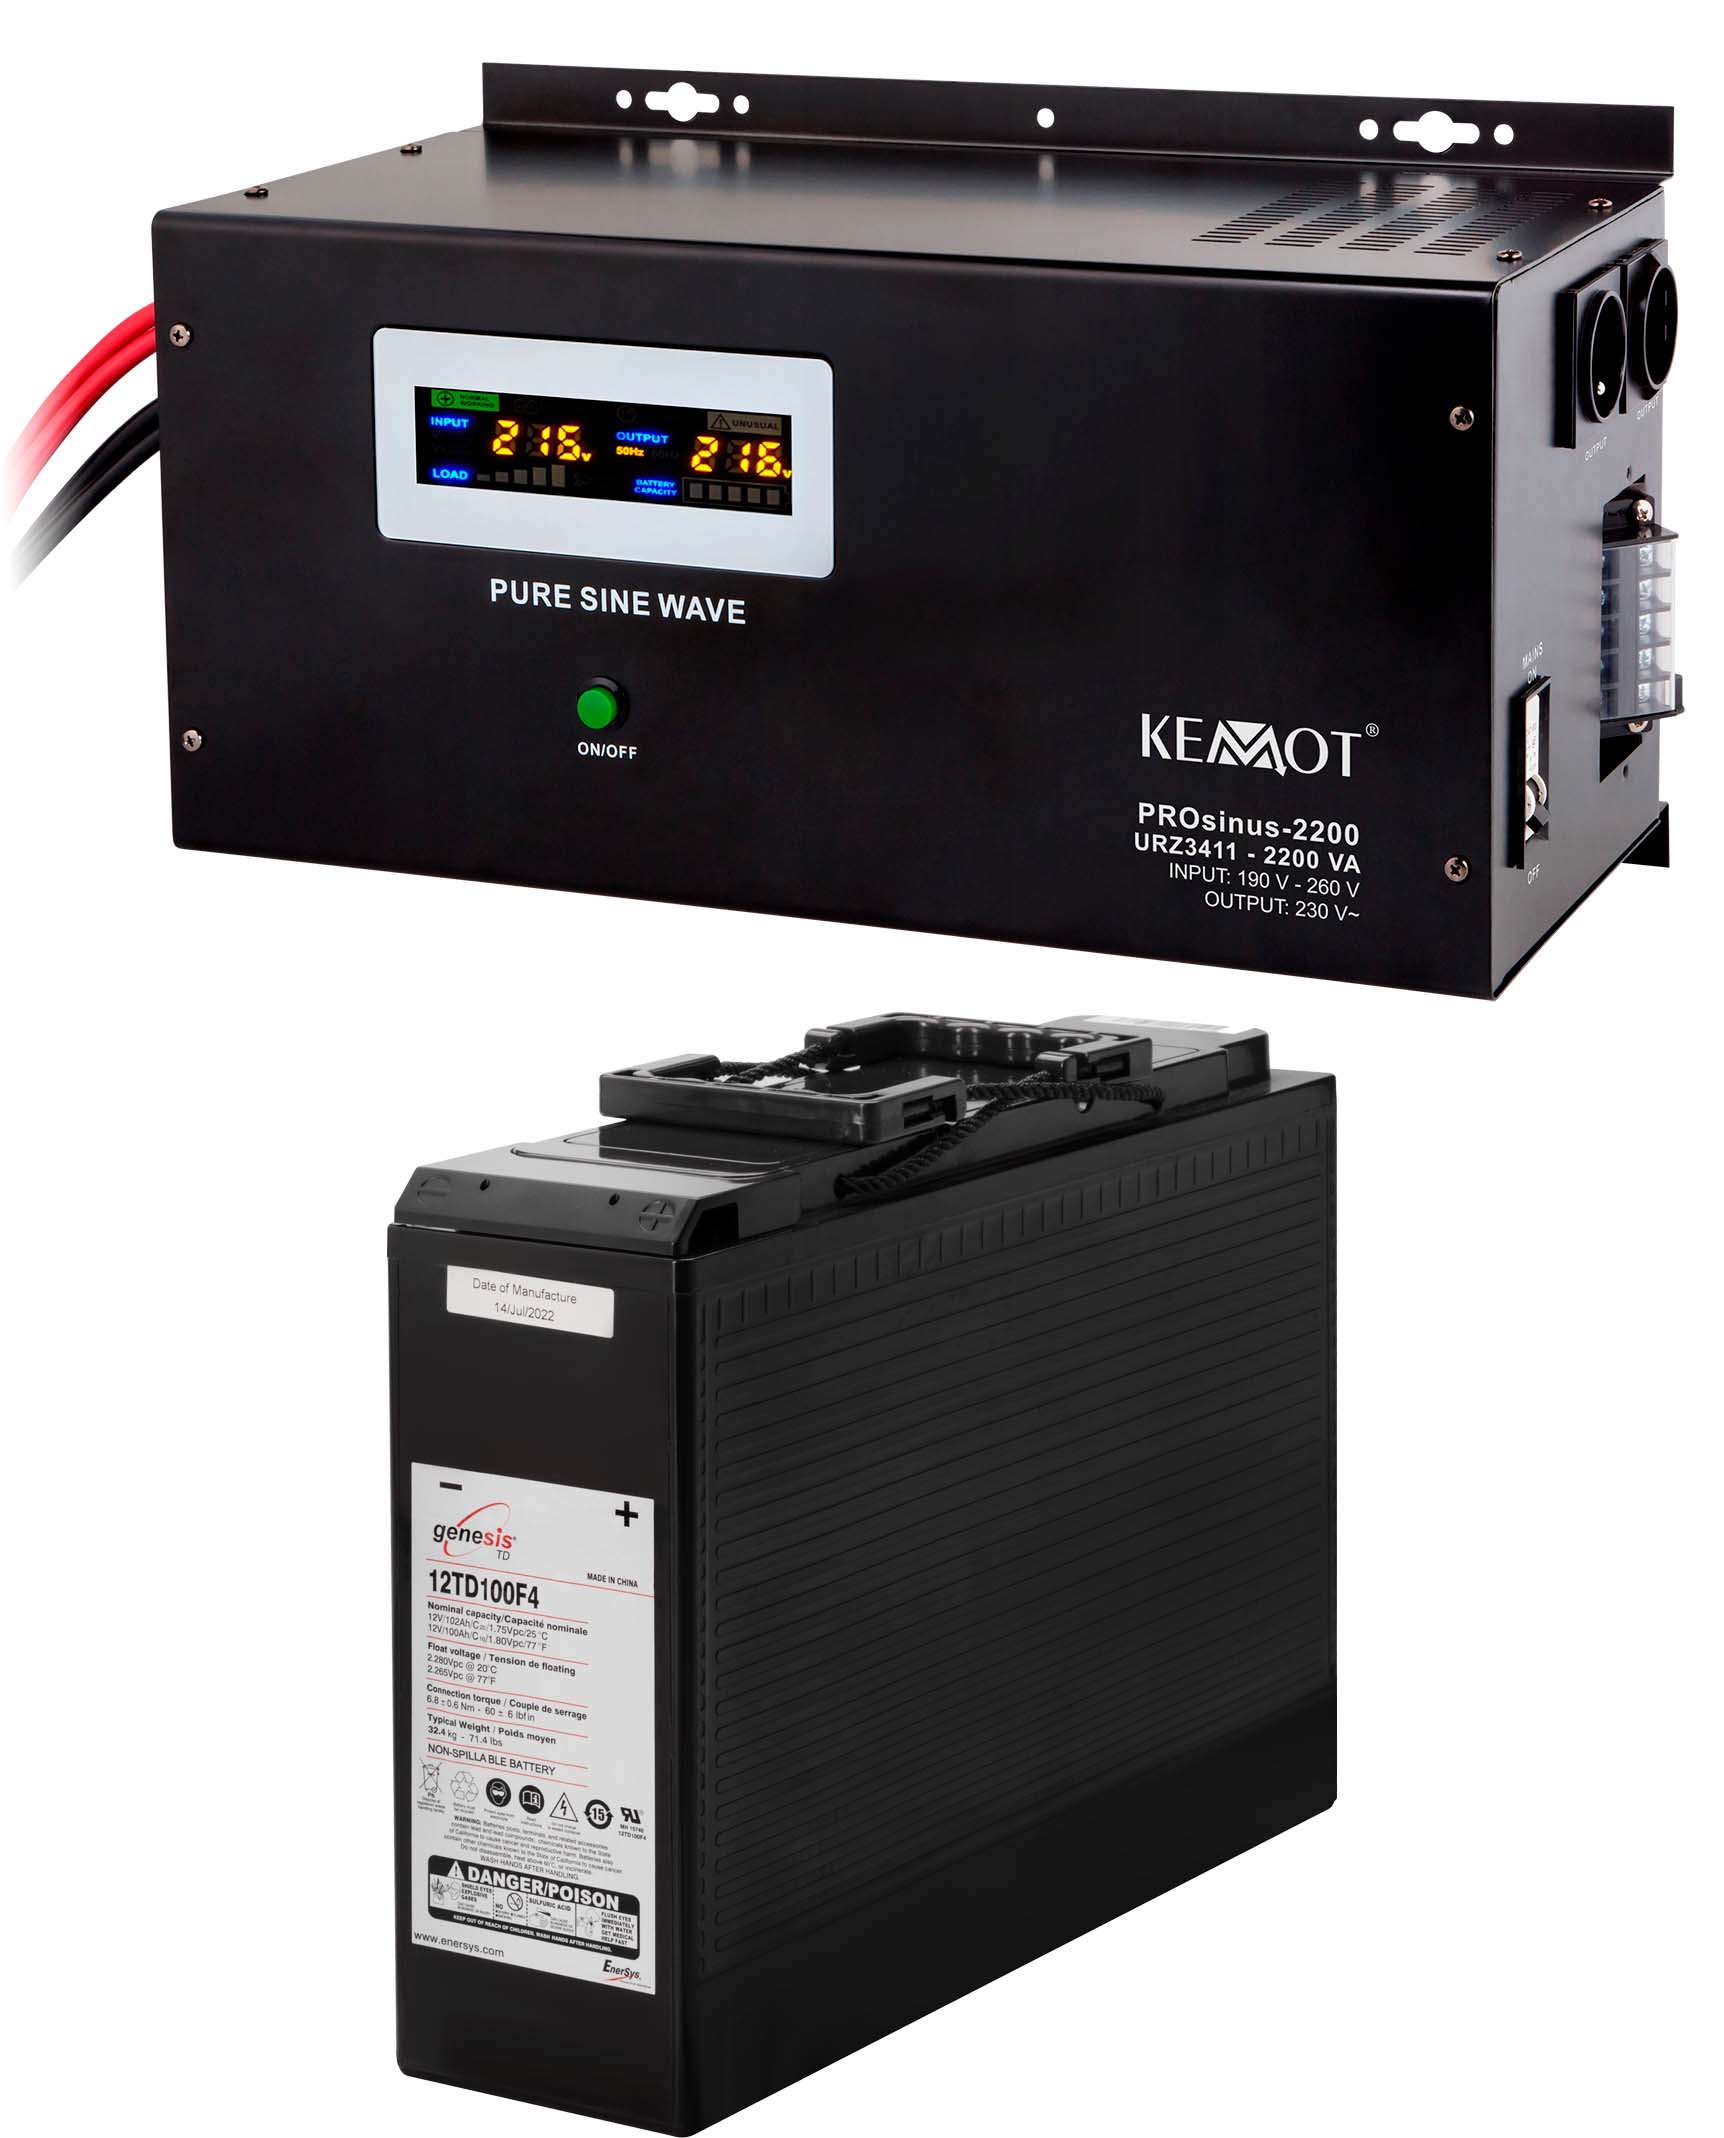 Відгуки джерело безперебійного живлення Kemot PROSinus-2200 (URZ3411)+акумулятор Genesis 12TD100F4 (12V100Ah)